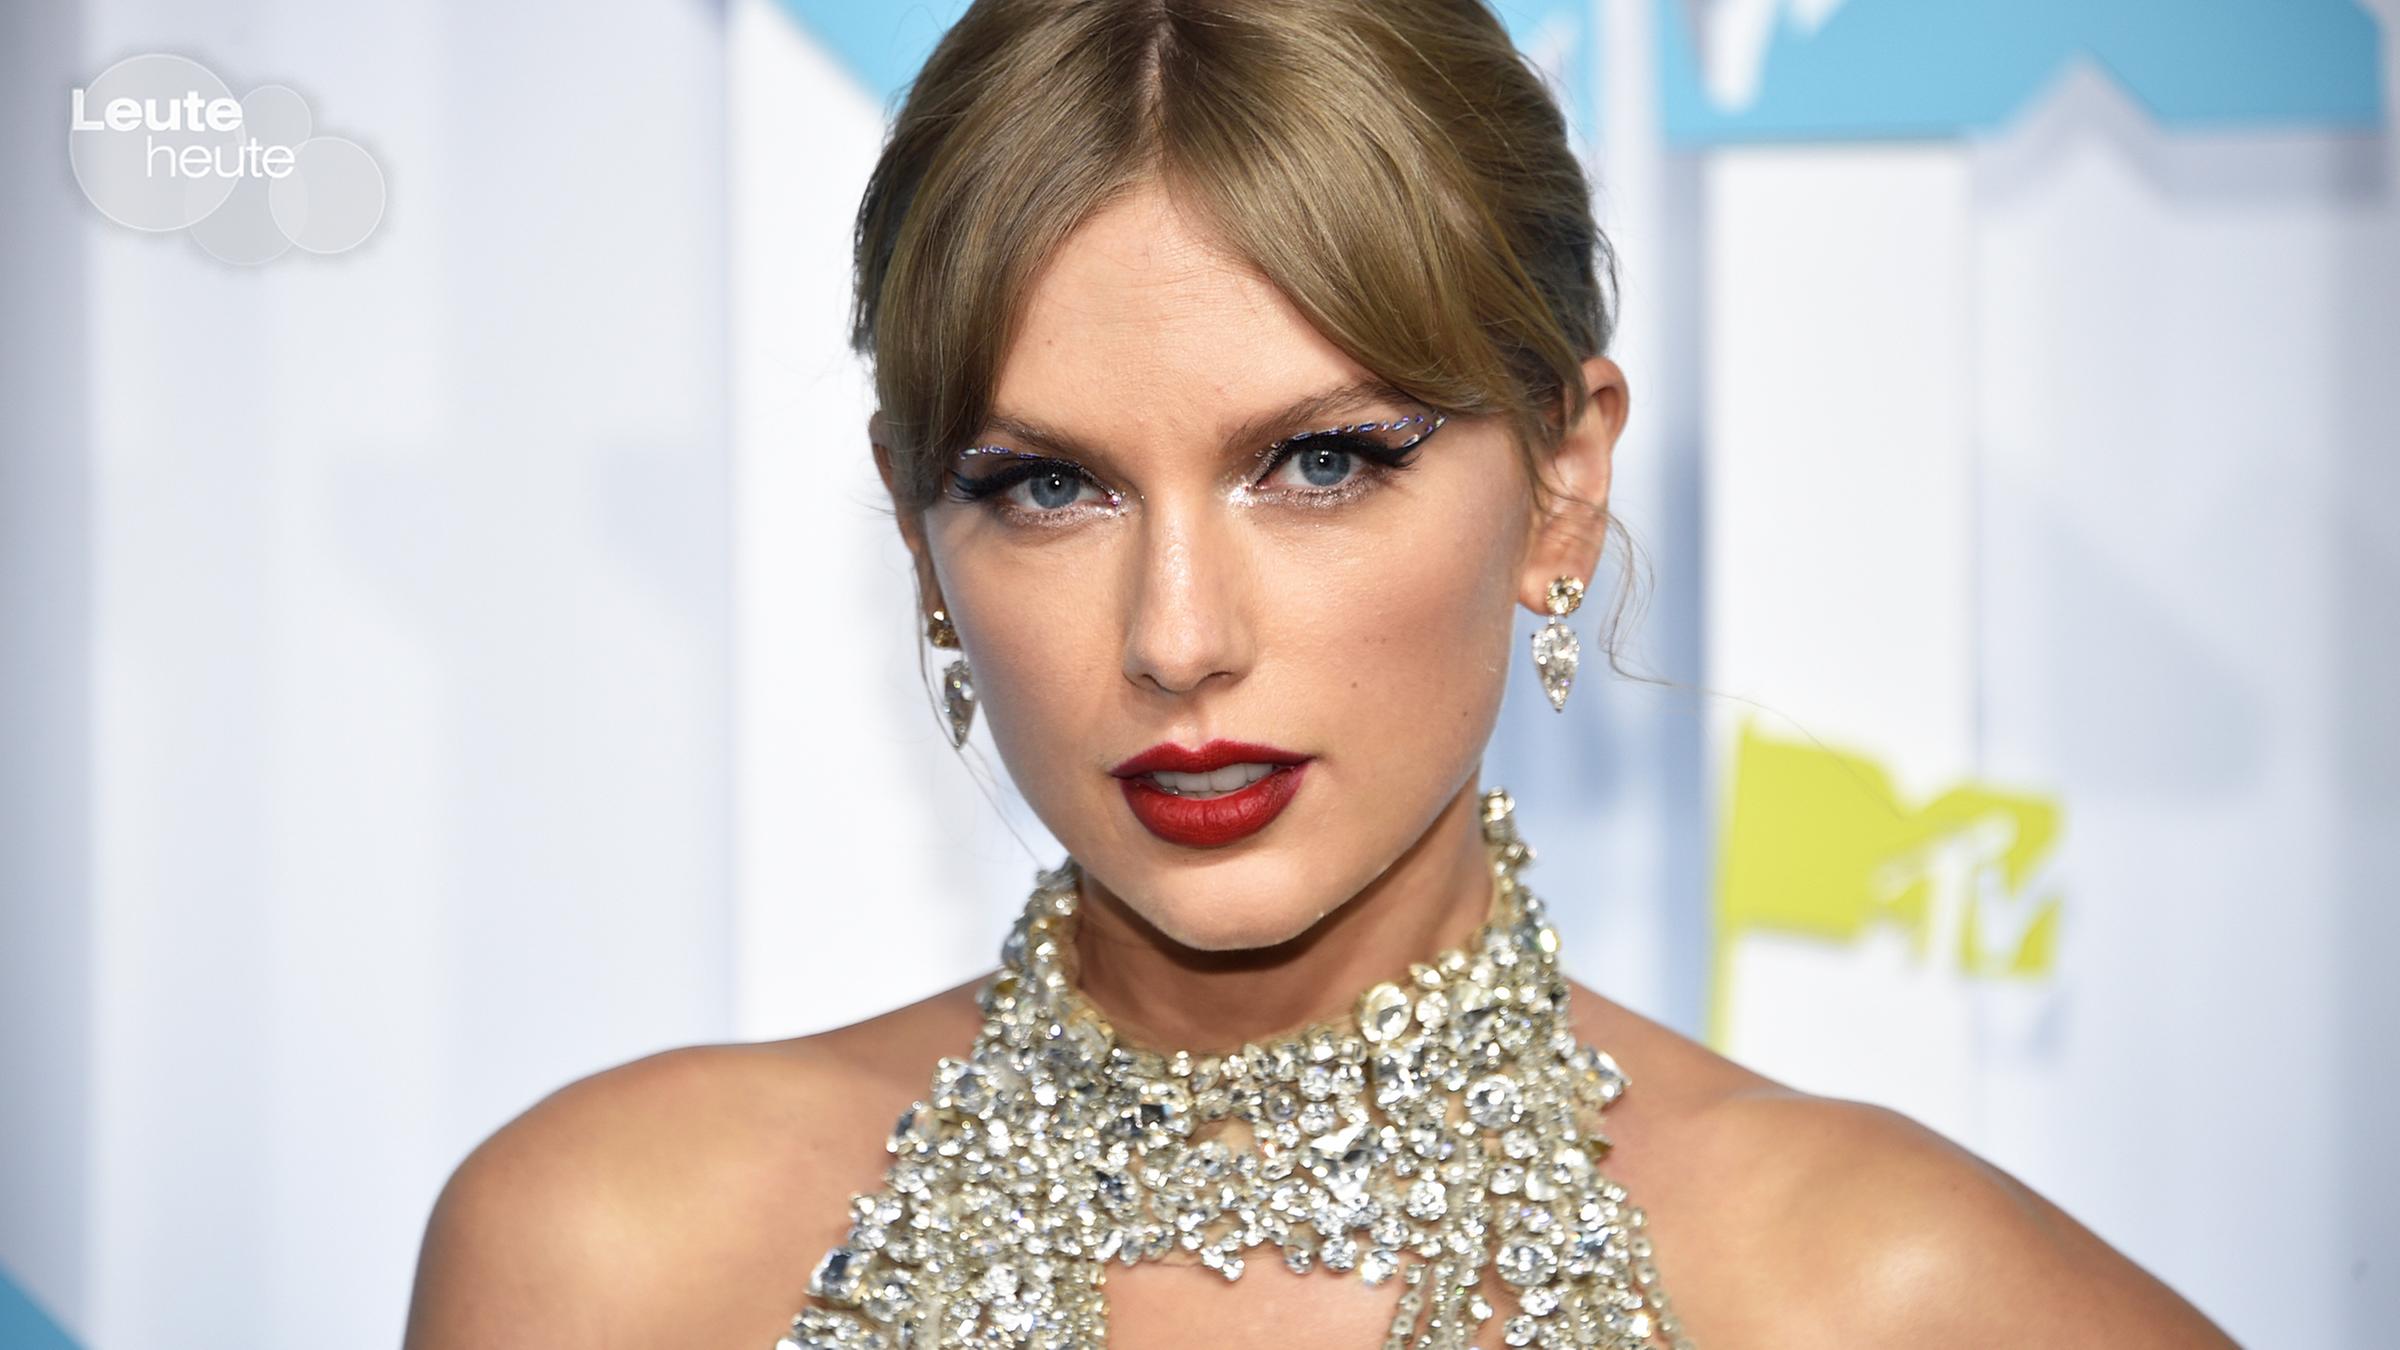 Sängerin Taylor Swift bei den MTV Video Music Awards.